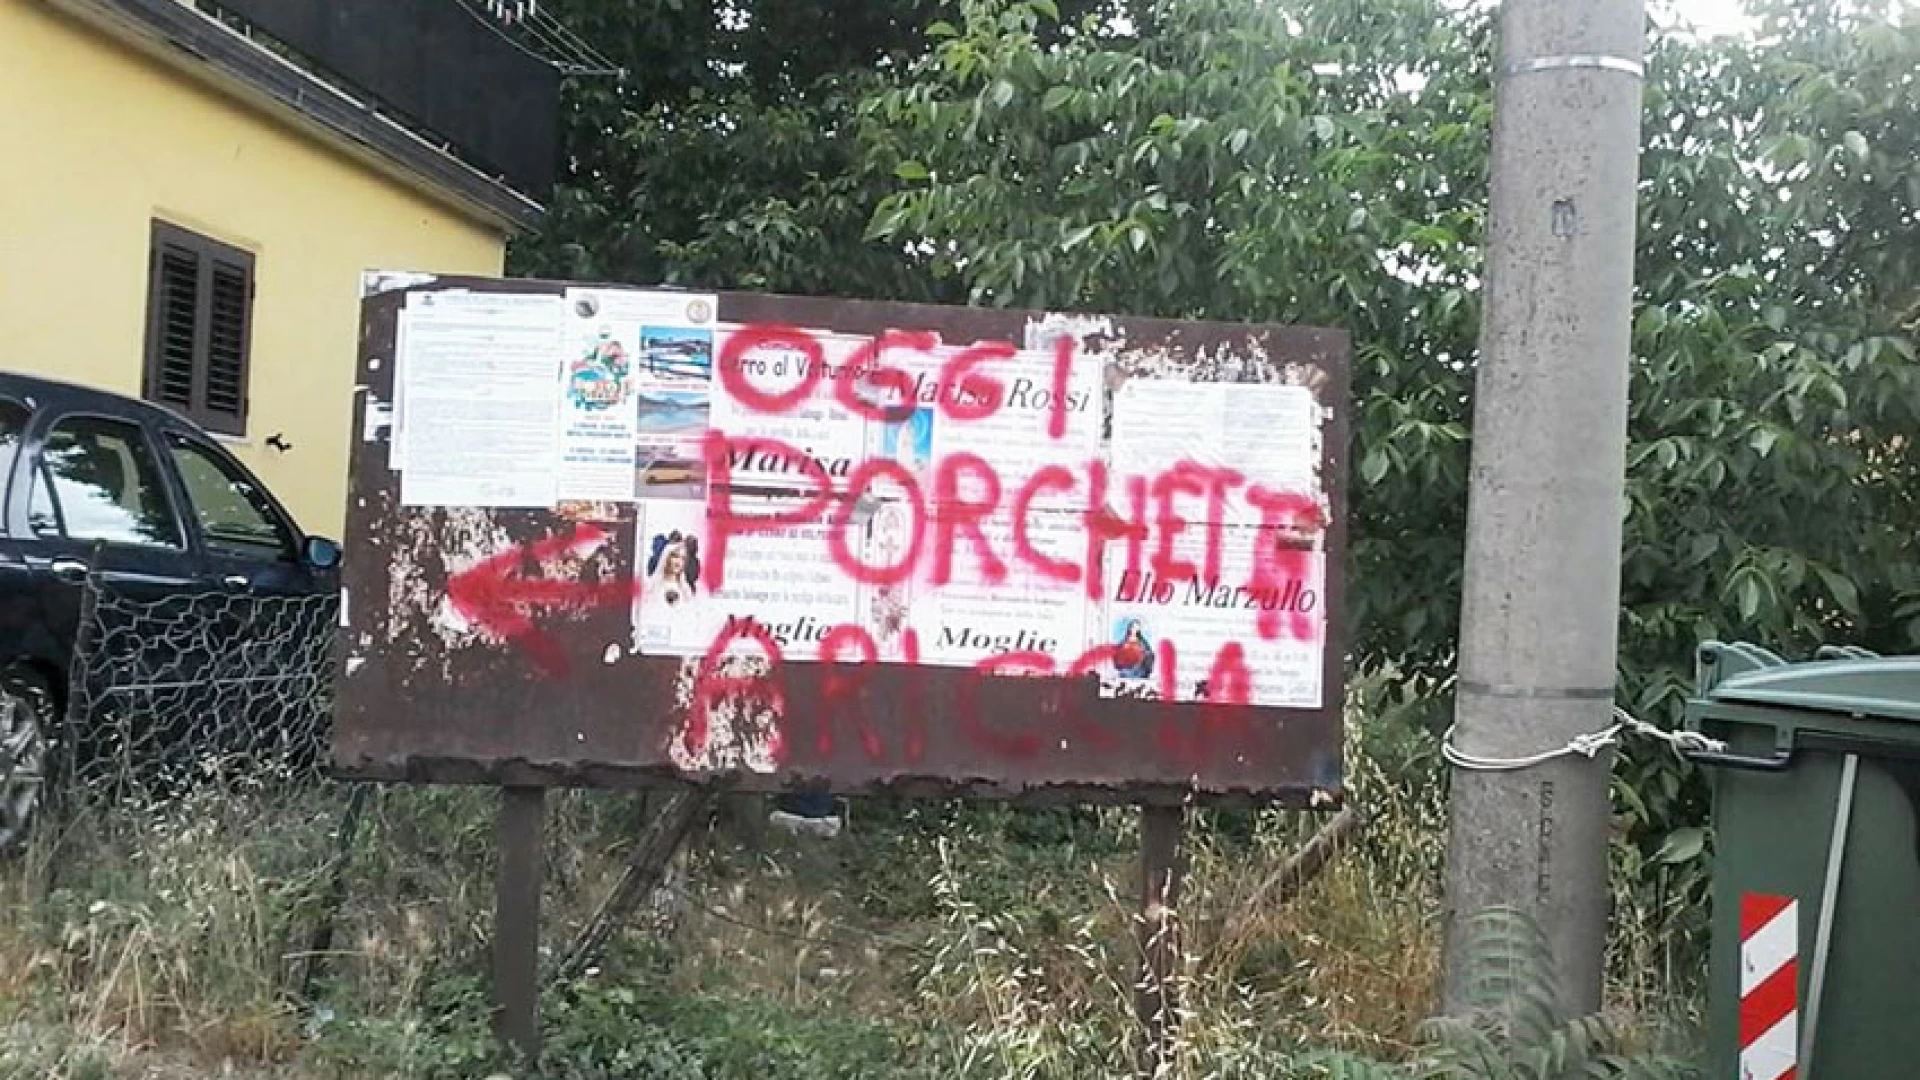 Cerro al Volturno:vandali offendono i “defunti”. Scritte ridicole sulle bacheche pubbliche. L’indignazione del consigliere Paolone.